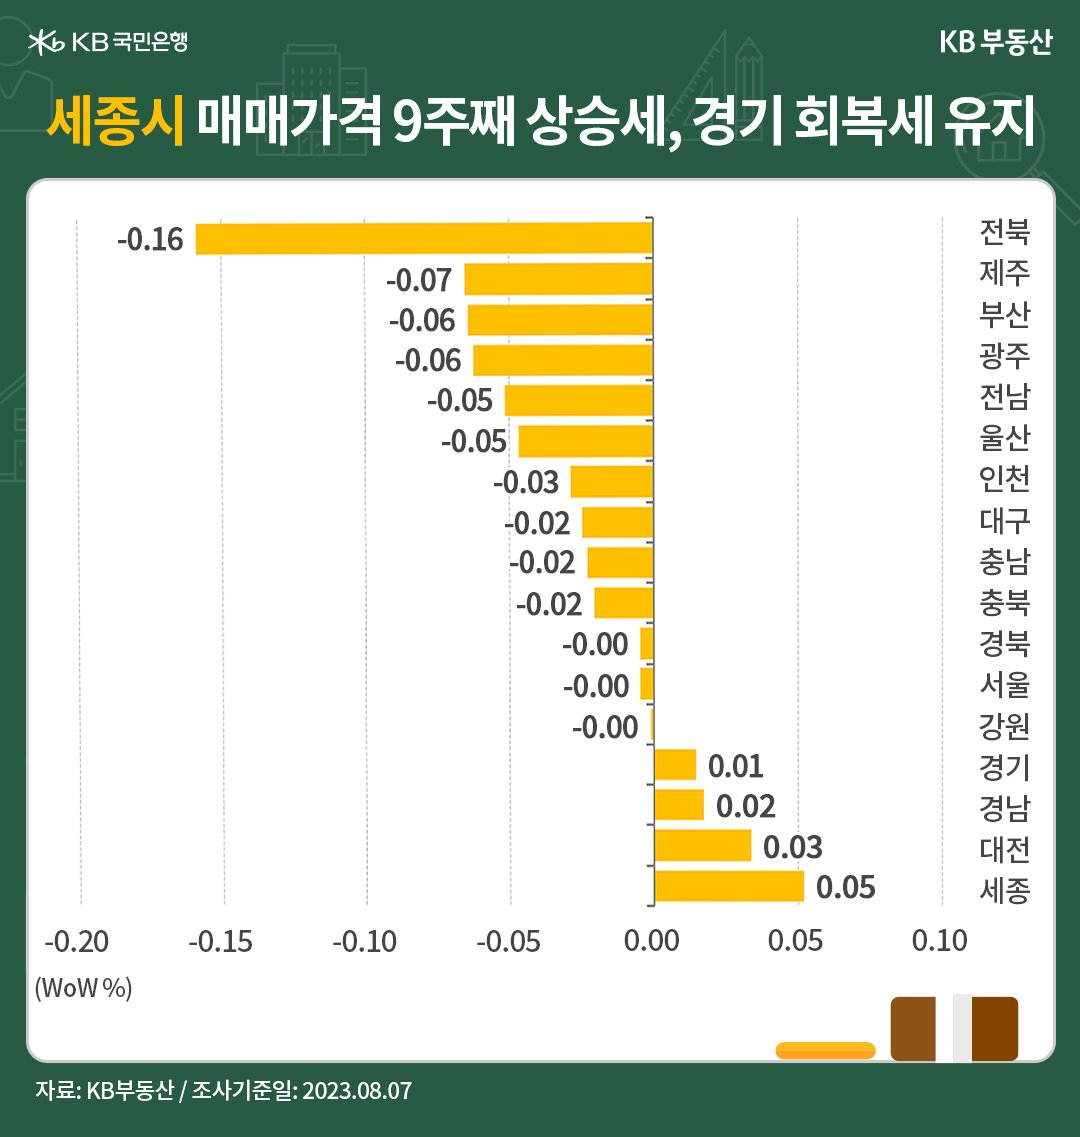 세종시의 '매매가격'이 9주째 상승중이며, 경기도는 회복세를 유지함을 나타내는 그래프, 서울에서 경기도로 확산된 '상급지 갈아타기' 수요가 '반발 매도세'로 강력해진 '경계매물'을 소화중임.